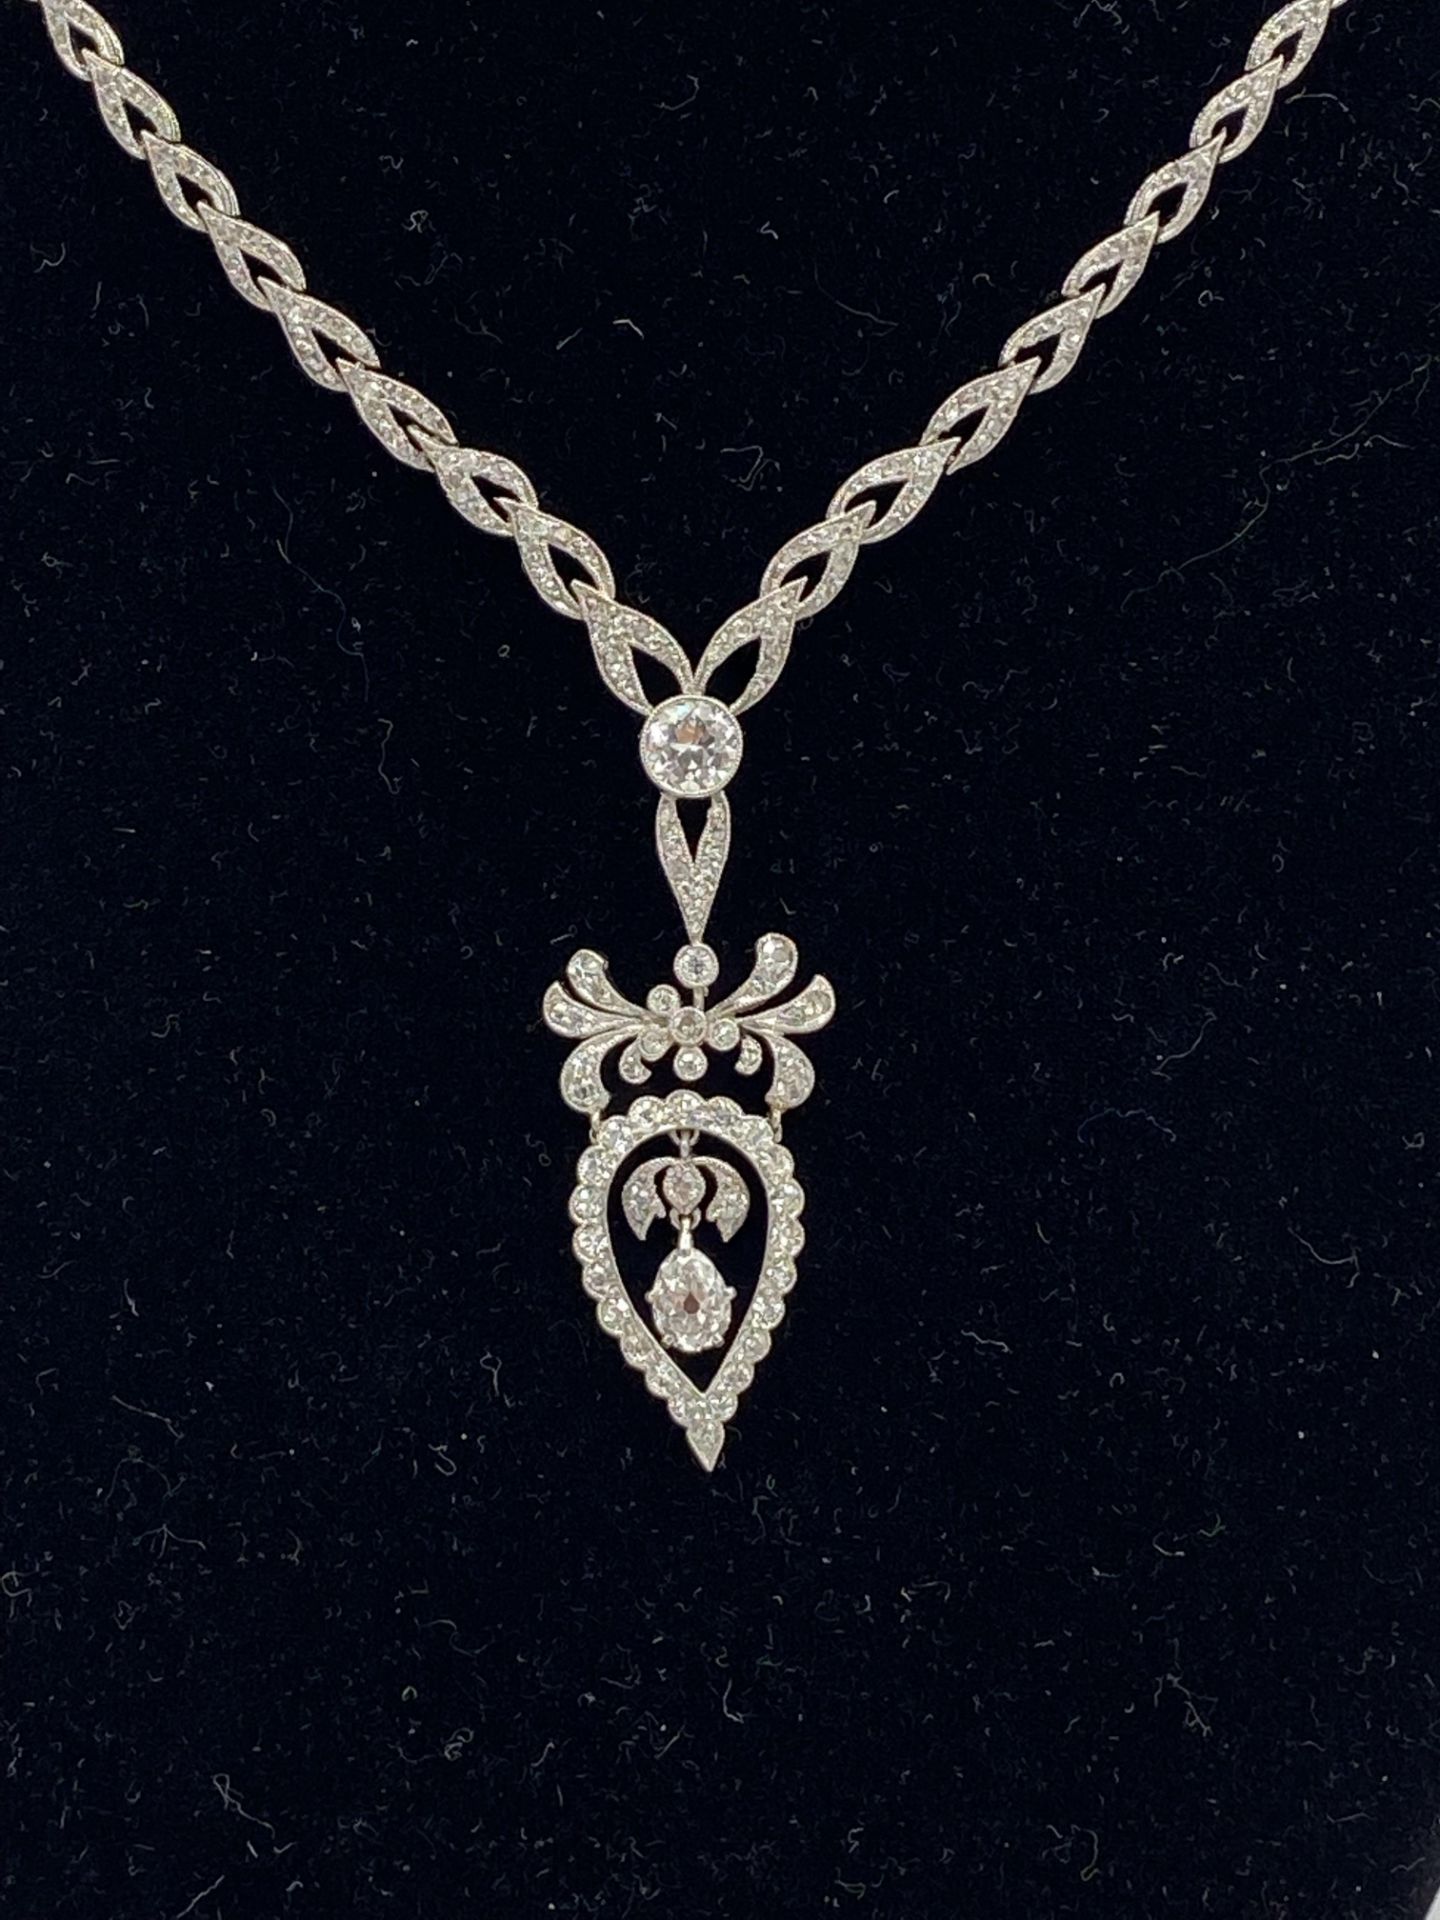 Edwardian white gold and diamond necklace - Image 3 of 10